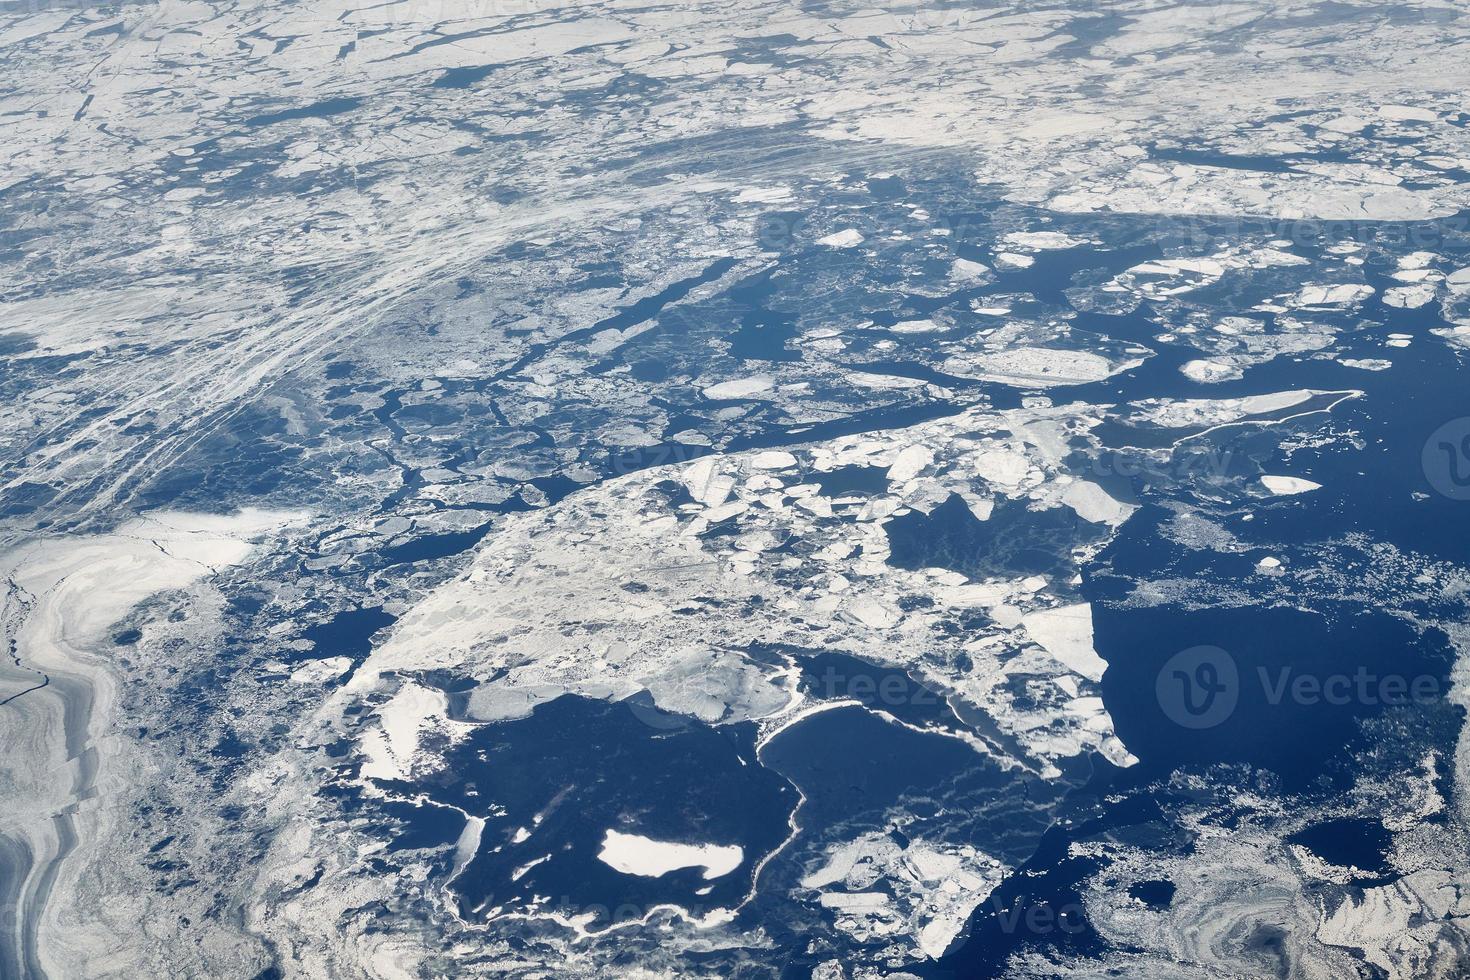 vista aérea da janela do avião sobre o topo das nuvens para o mar congelado coberto de neve, ar gelado fresco de inverno foto